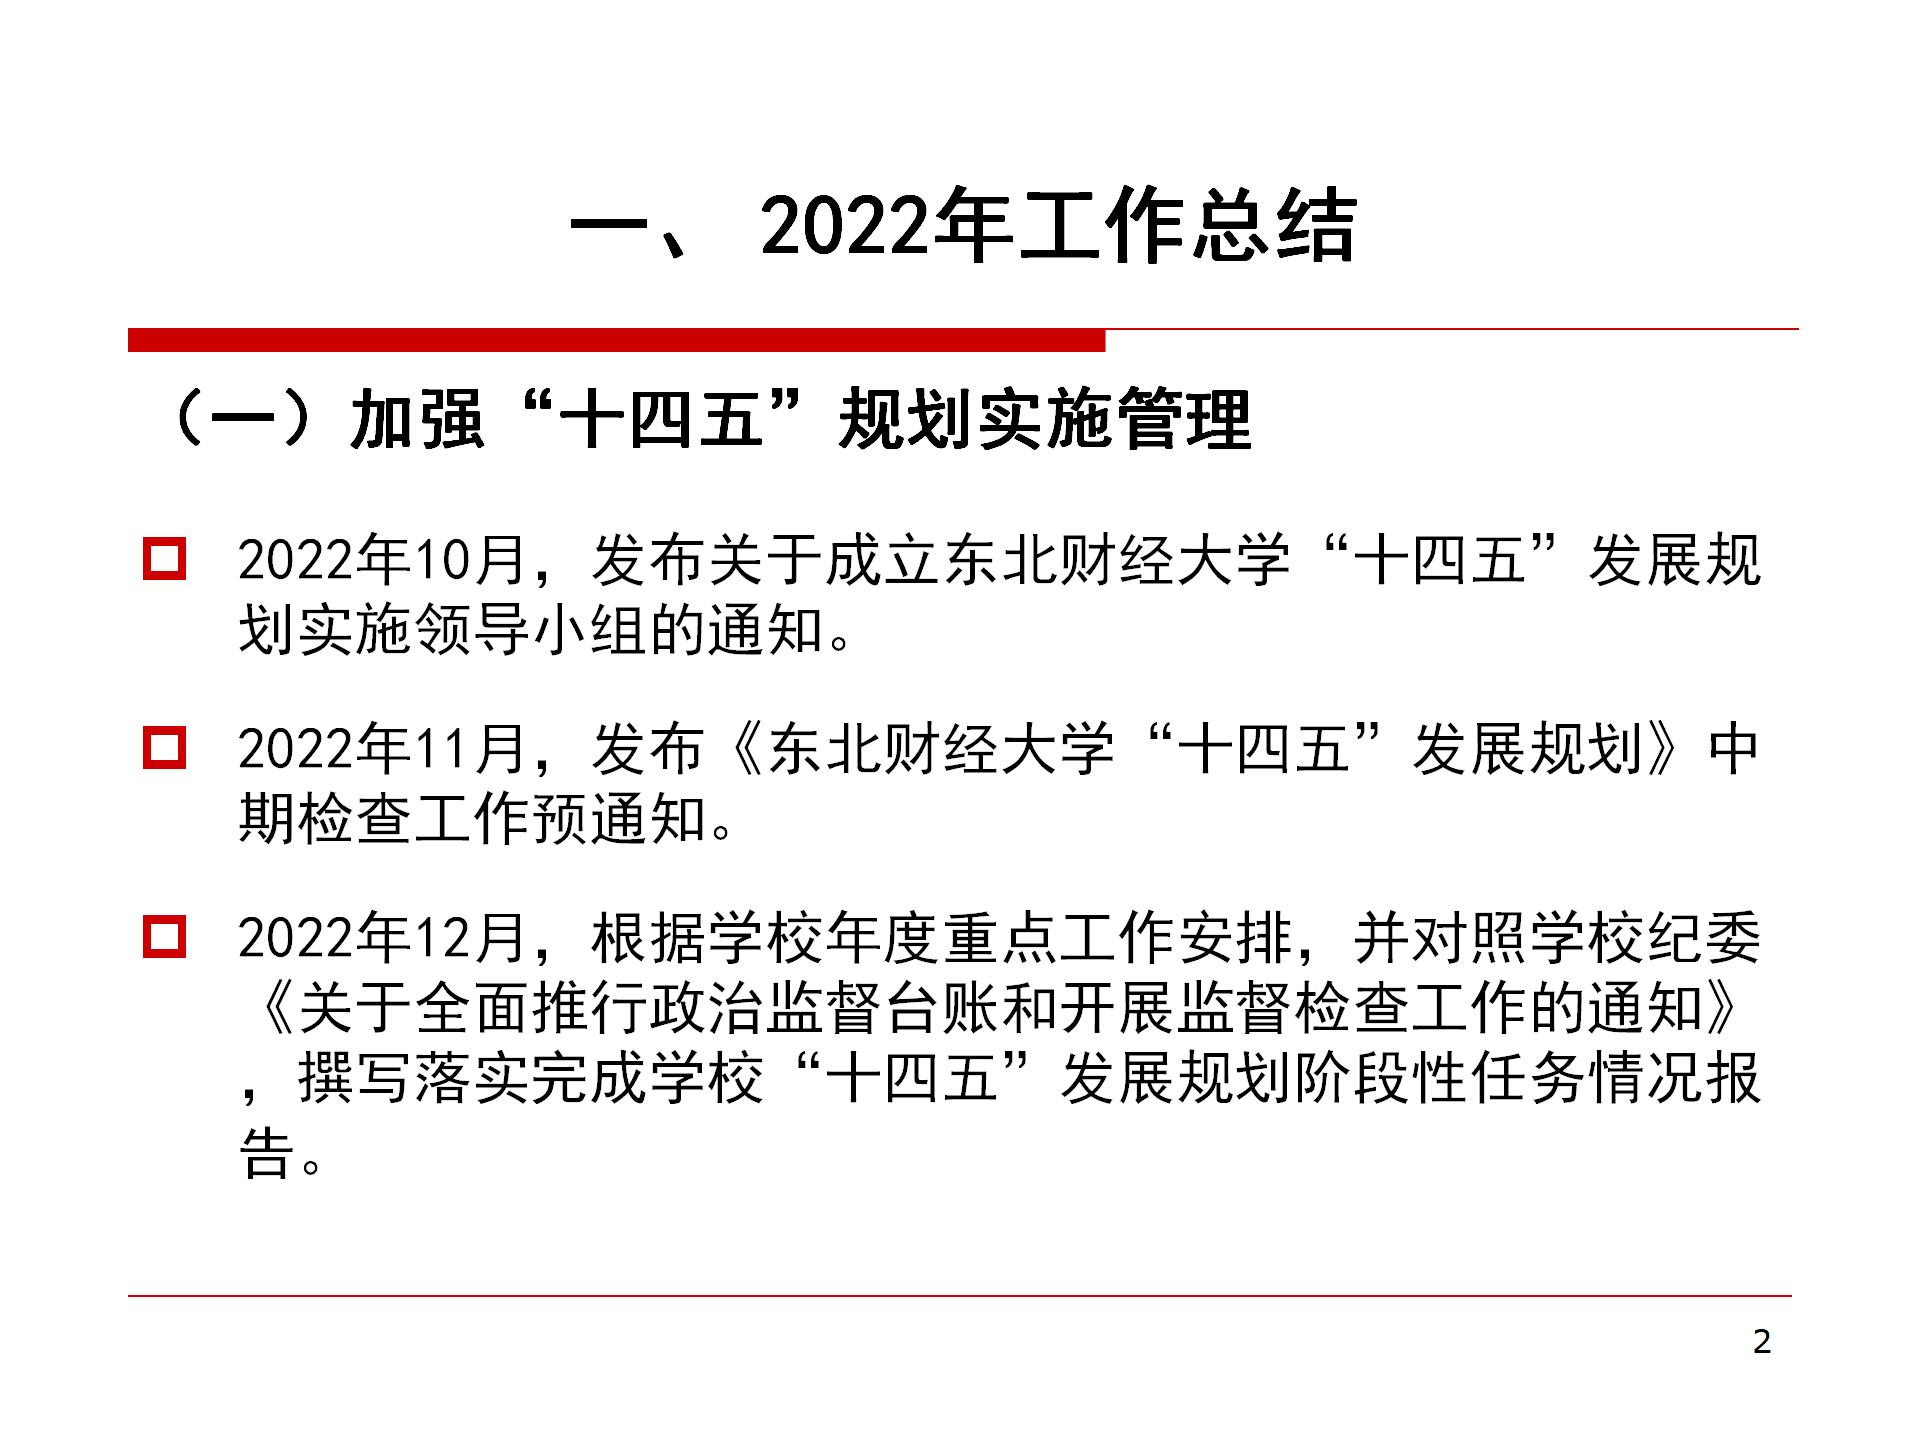 发展规划科2022年工作总结与2023年工作计划_02.jpg